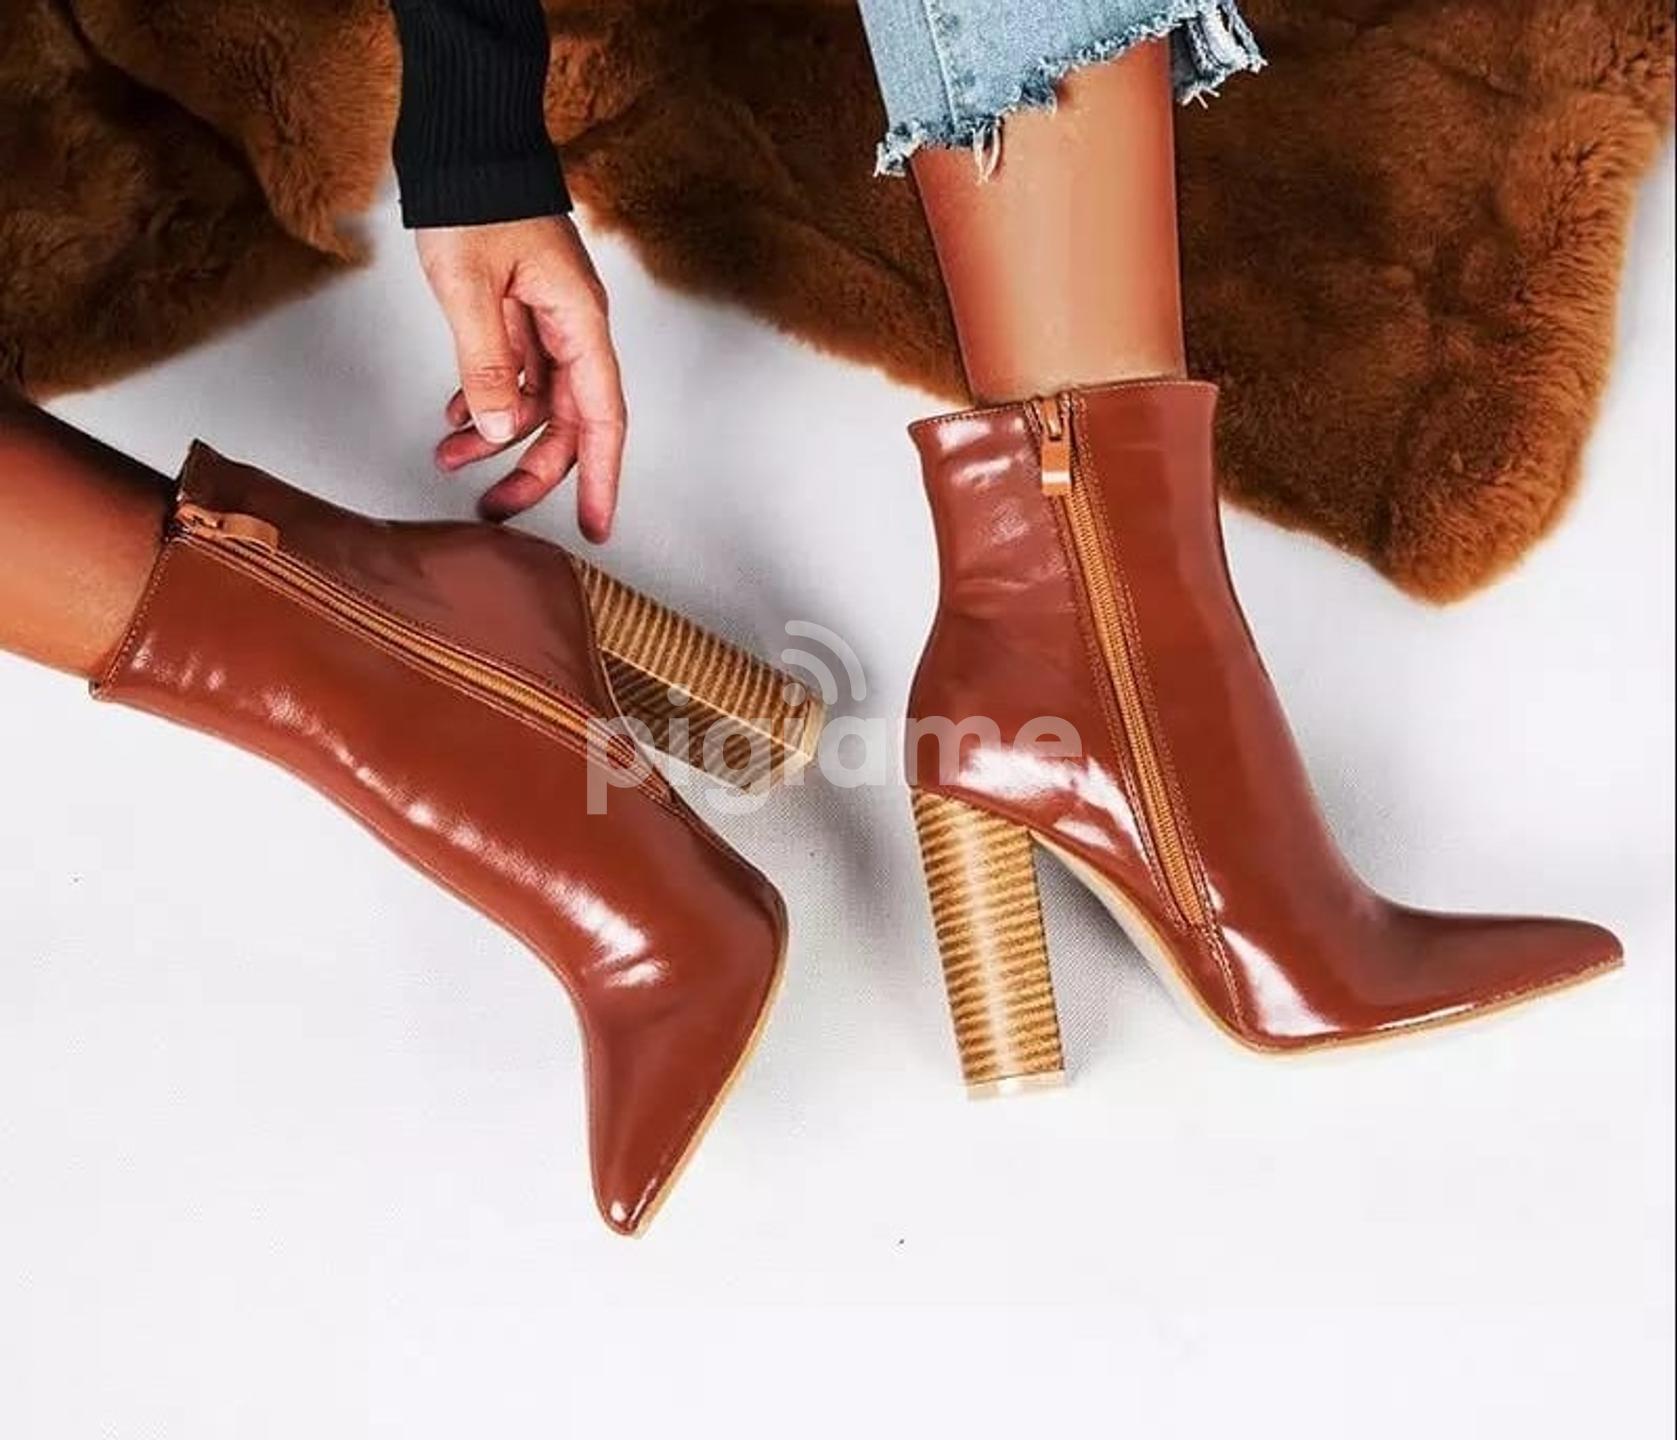 Amazon.com: Women's Heeled Sandals - Brown / Women's Heeled Sandals /  Women's Sandals: Clothing, Shoes & Jewelry